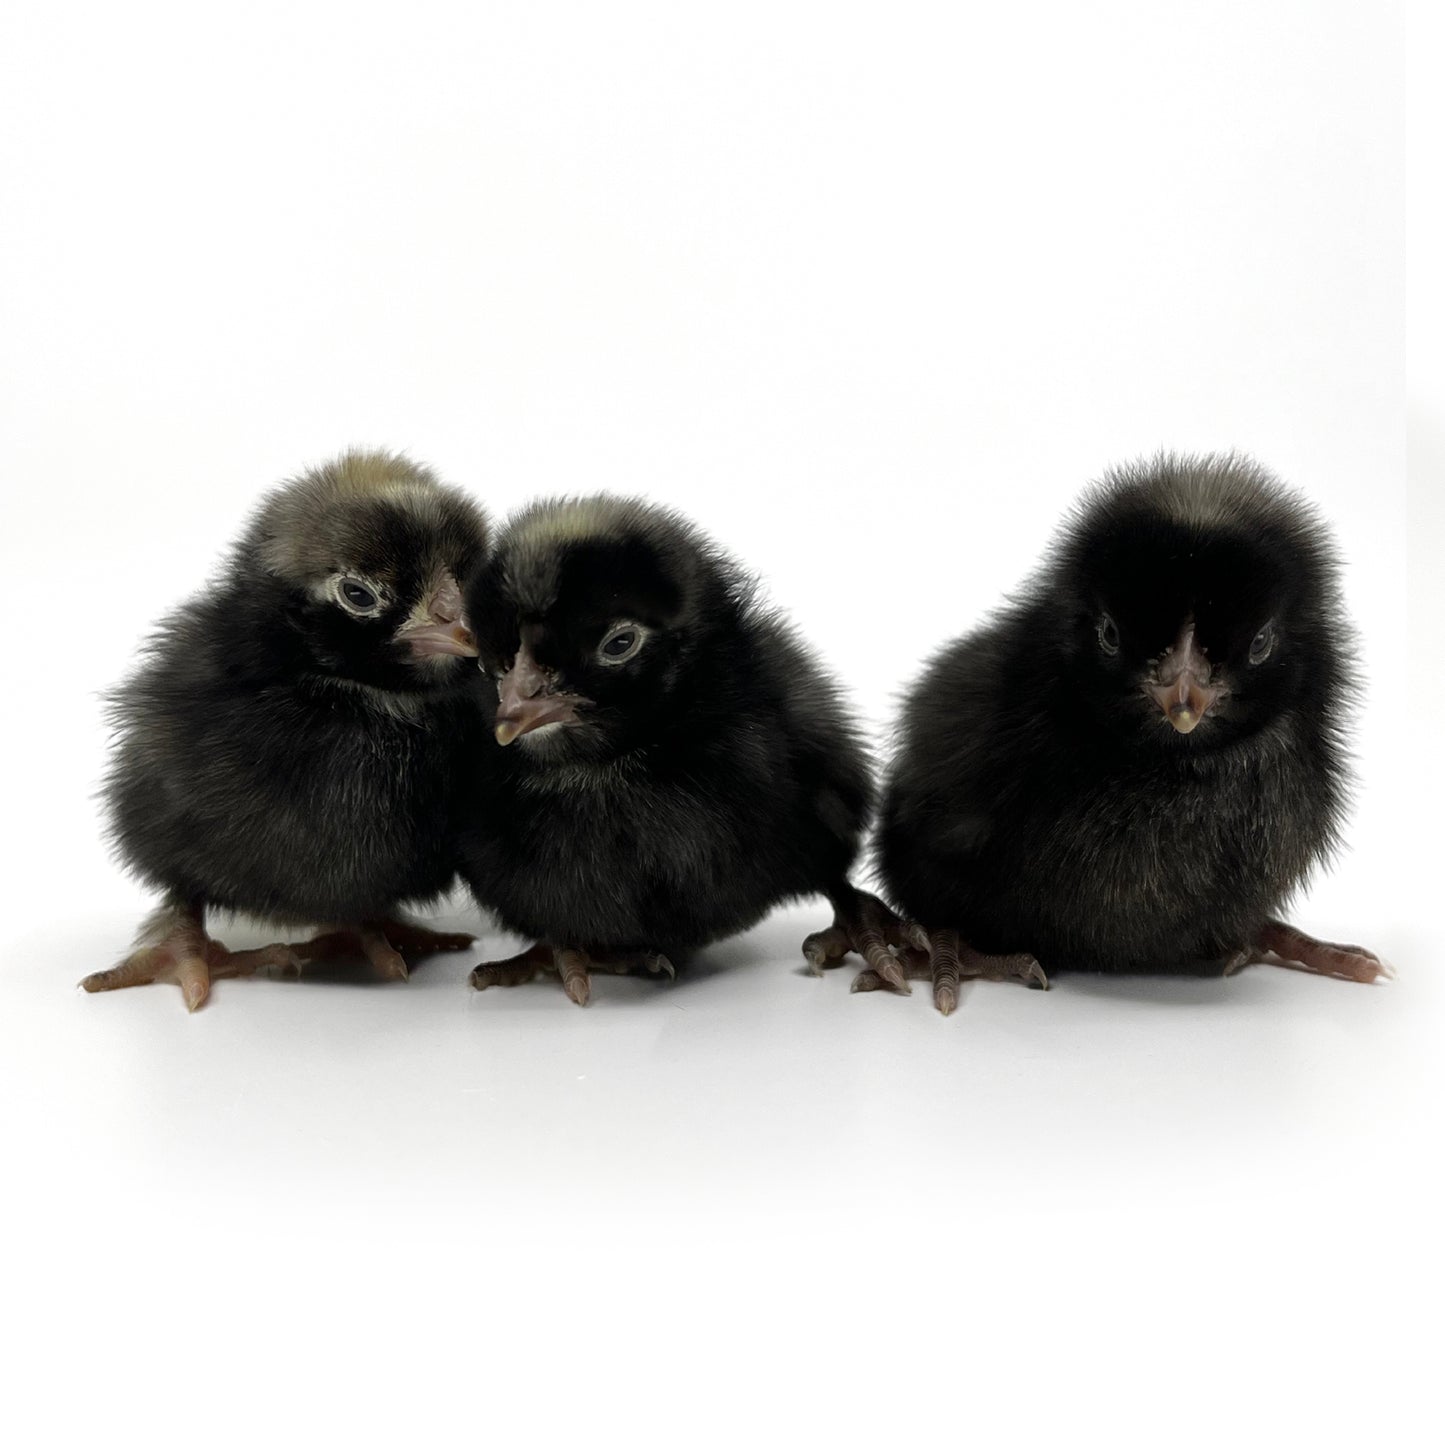 Golden Kissed granite Olive Egger baby chicks for sale. 